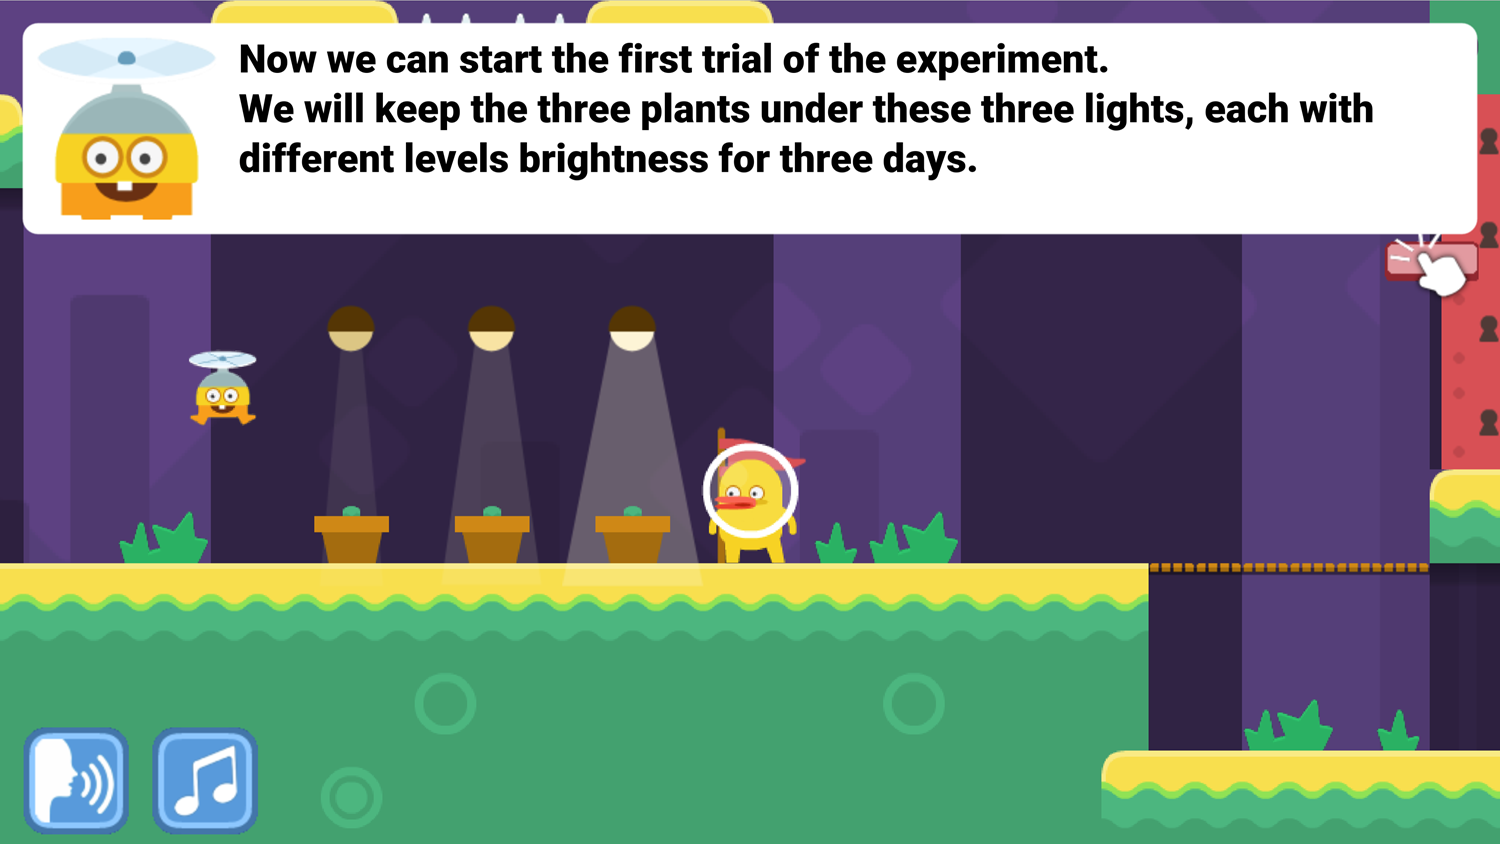 DocDuck Scientific Method Game Beginning Experiment Screenshot.